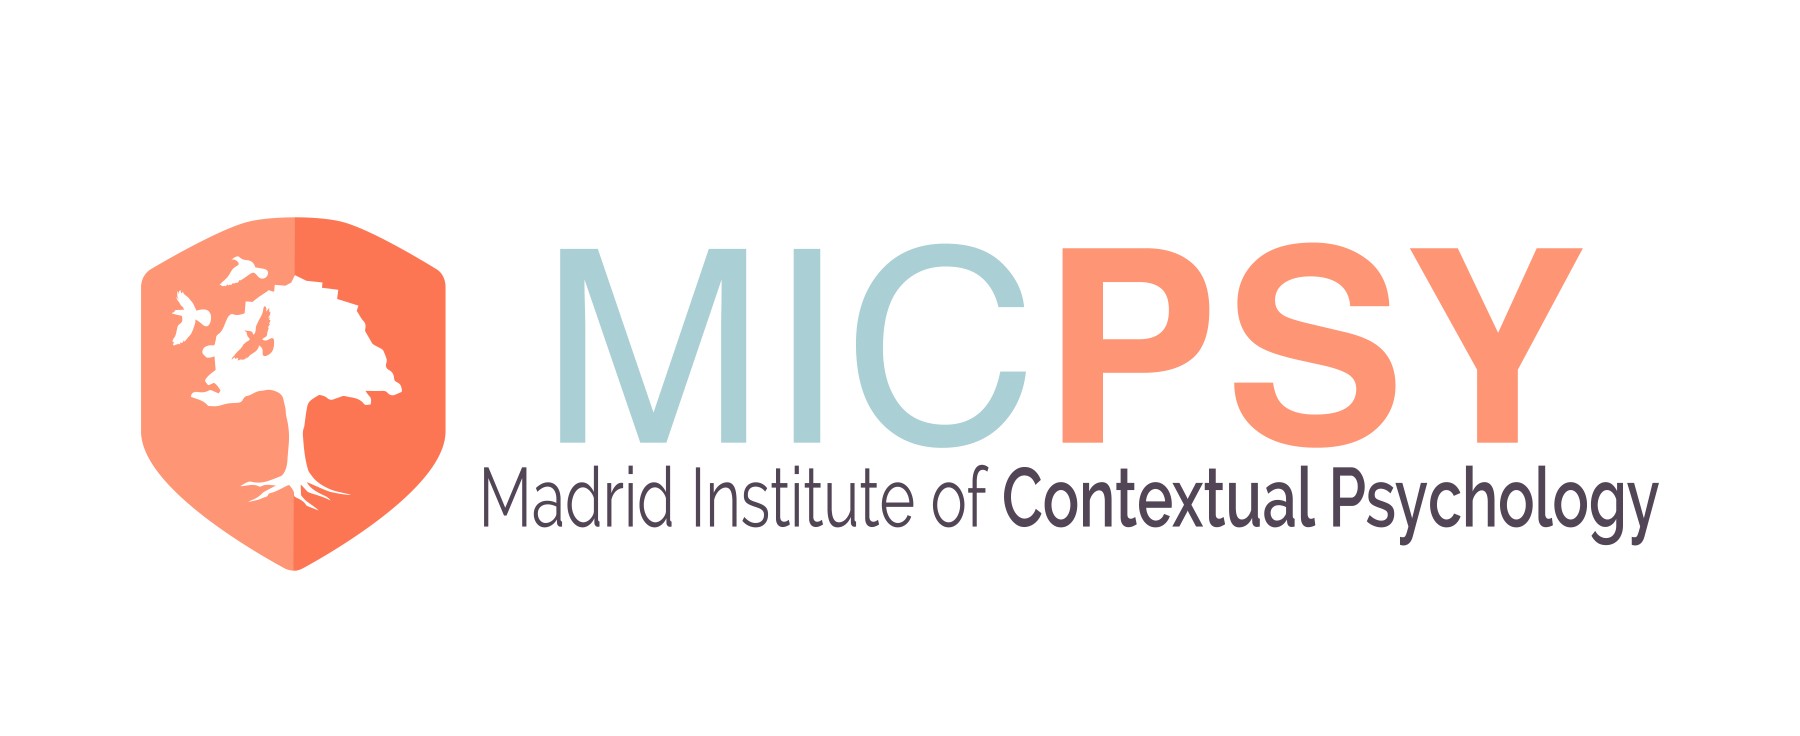 Curso online – Especialista en Terapias Contextuales - Instituto de Psicología Contextual Madrid - MICPSY